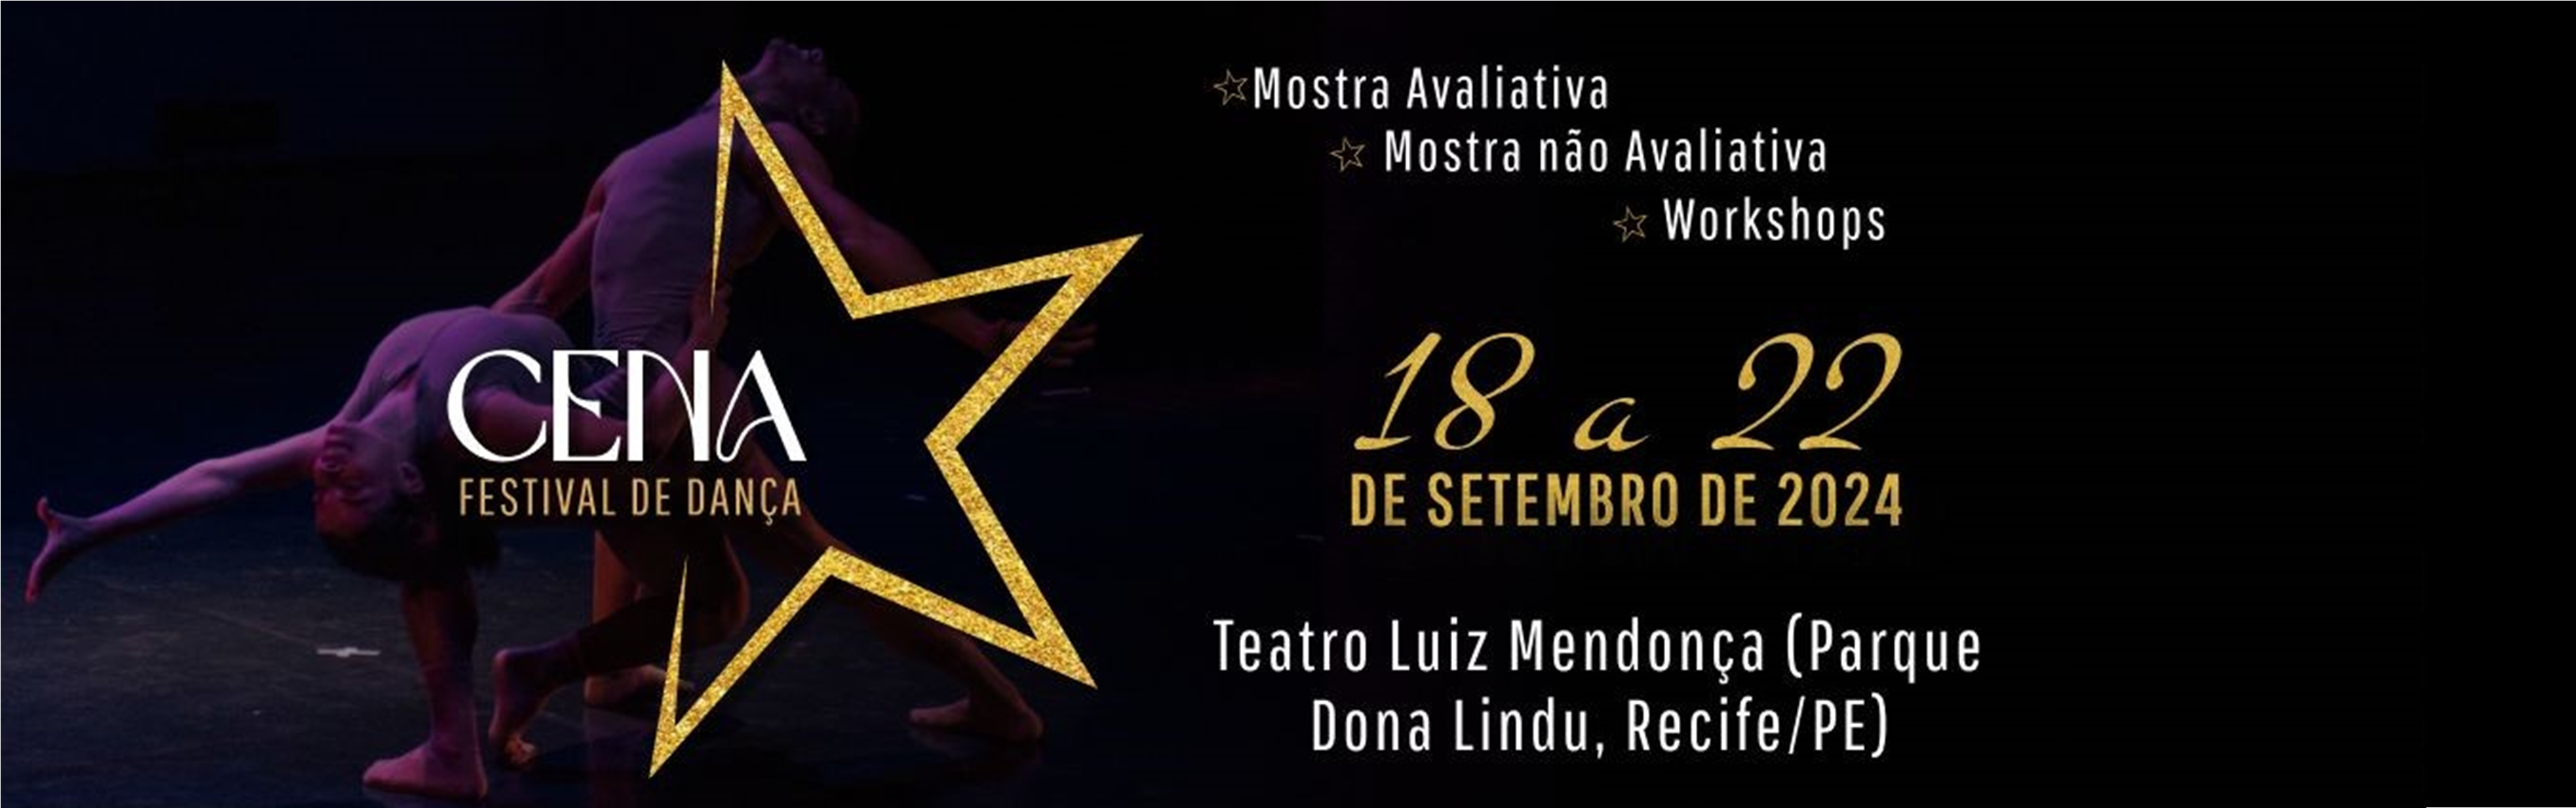 Cena Festival de Dança - 2024